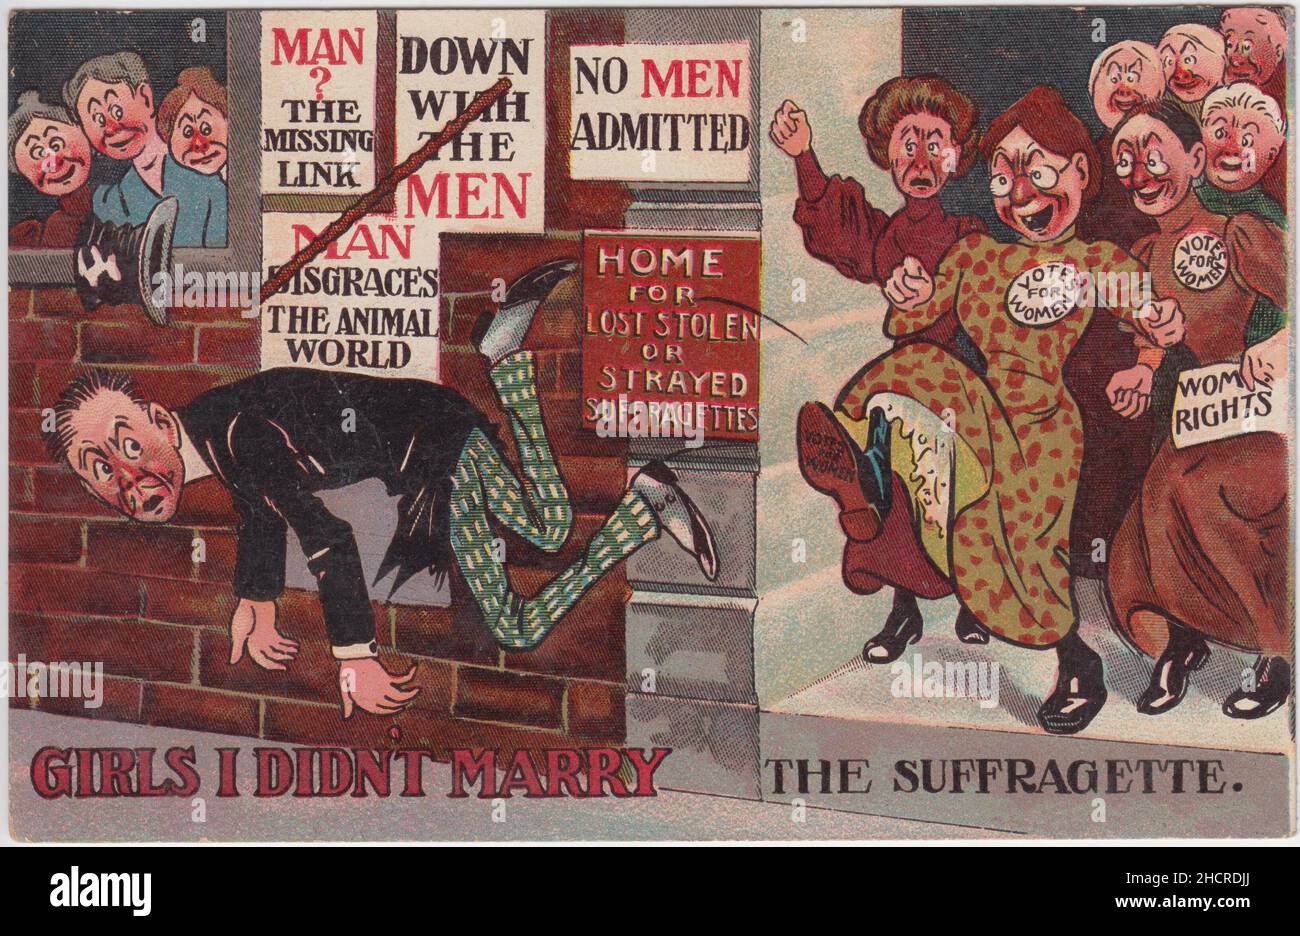 « filles que je n'ai pas épousé la suffragette » : dessin animé montrant un homme portant des spates avec une moustache plutôt mince faisant l'objet d'un démarrage à l'extérieur d'une « maison pour les Suffragettes volées ou égarées ».Les femmes sont dépeintes comme des femmes laides, plus âgées.Plusieurs ont des badges avec « votes pour les femmes » sur (une légende qui est également écrite sur la semelle de la chaussure qui a relié à l'arrière de l'homme) et une femme porte un papier intitulé « droits des femmes ».Les affiches anti-hommes sont collées sur le mur avec les slogans « Dwn with the men », « No men admit », « an disgrace the Animal World » et « an?Le lien manquant' Banque D'Images